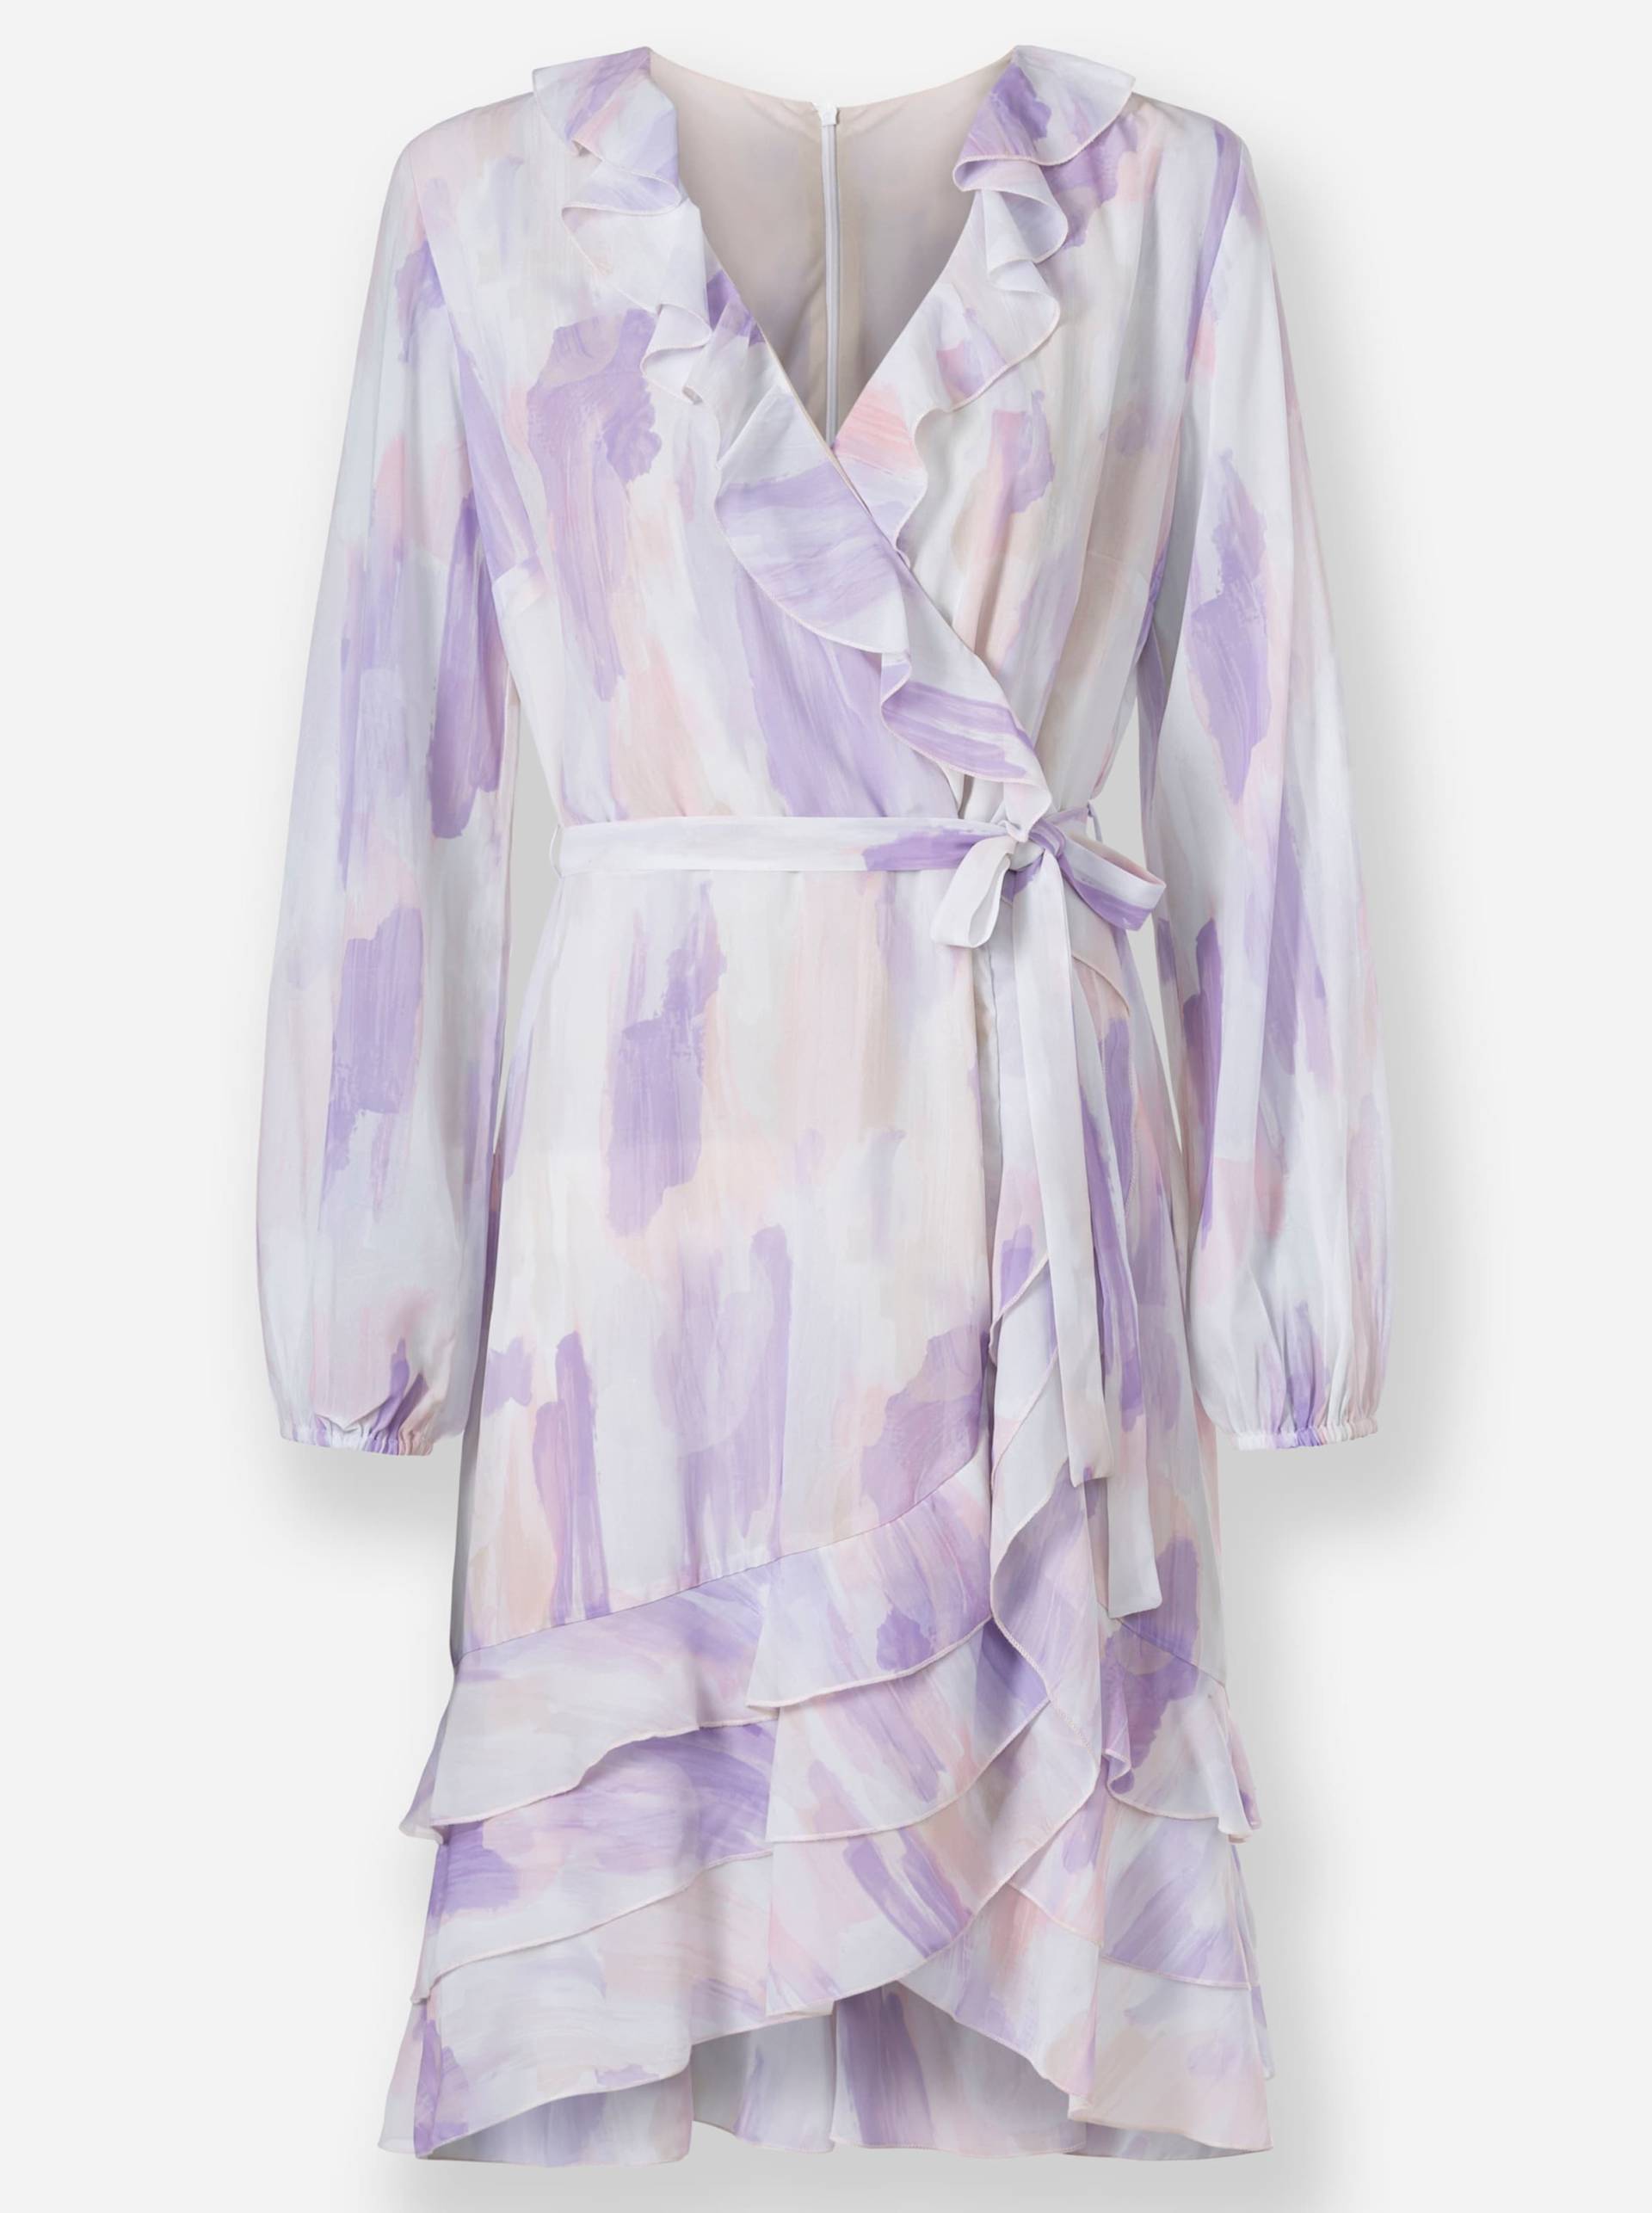 Druck-Kleid in lavendel-ecru-bedruckt von heine